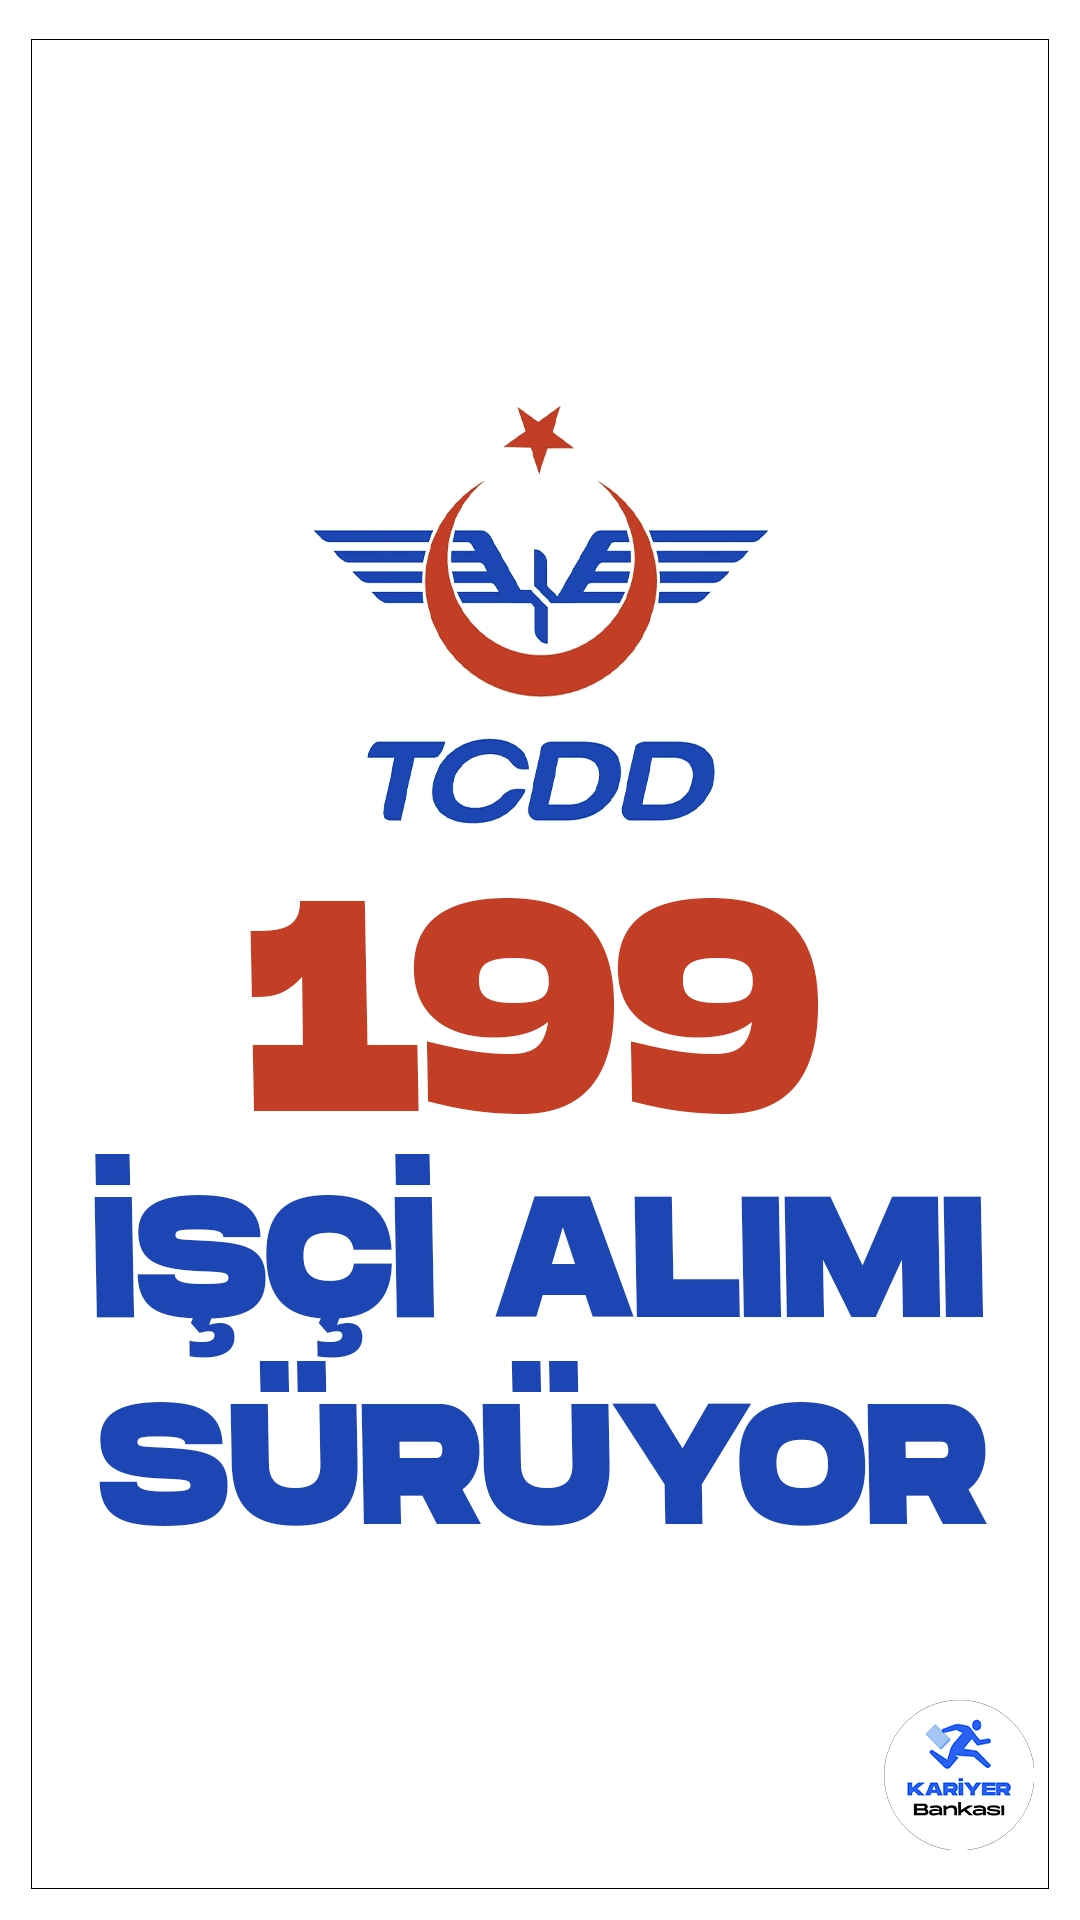 Türkiye Cumhuriyeti Devlet Demiryolları (TCDD) işçi alımı başvuruları sürüyor.Cumhurbaşkanlığı Strateji ve Bütçe Başkanlığı Kamu ilan sayfasında yayımlanan duyuruda, TCDD’ye sürekli işçi alımı yapılacağı aktarıldı. Başvurular yarın (22 Aralık) sona erecek. Başvuru yapacak adayların şartları dikkatle incelemesi gerekmektedir.